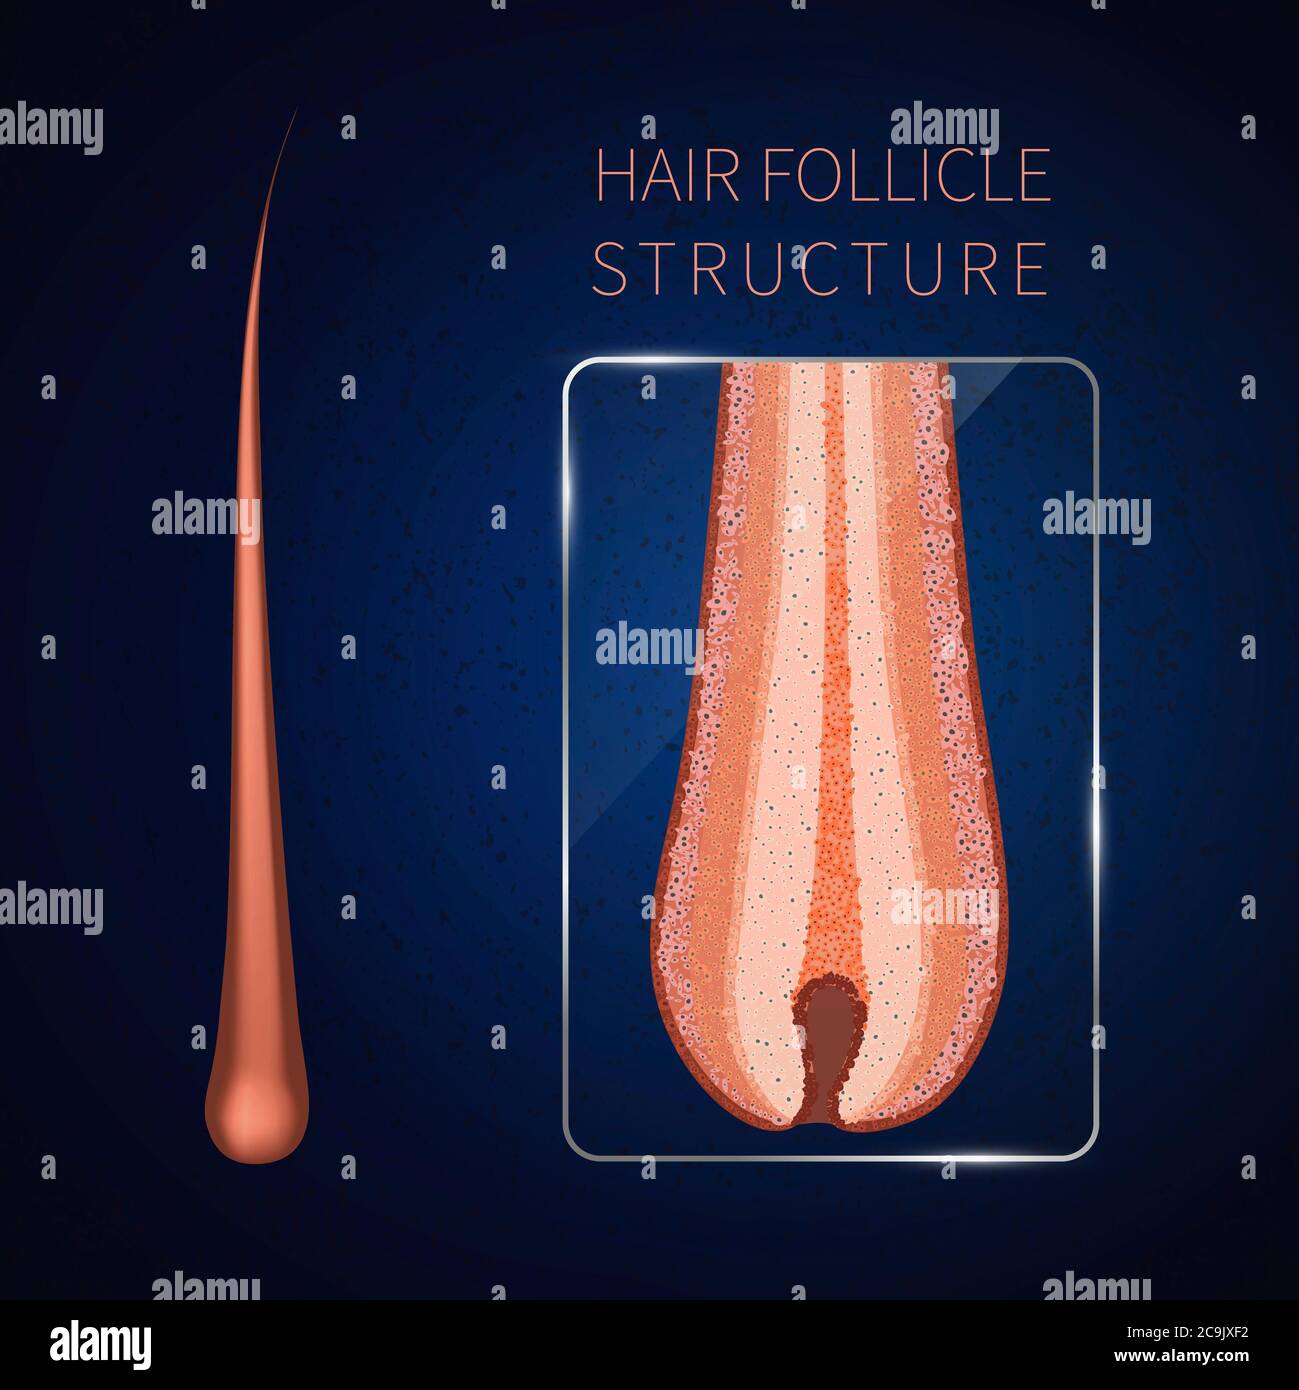 Hair follicle, illustration. Stock Photo